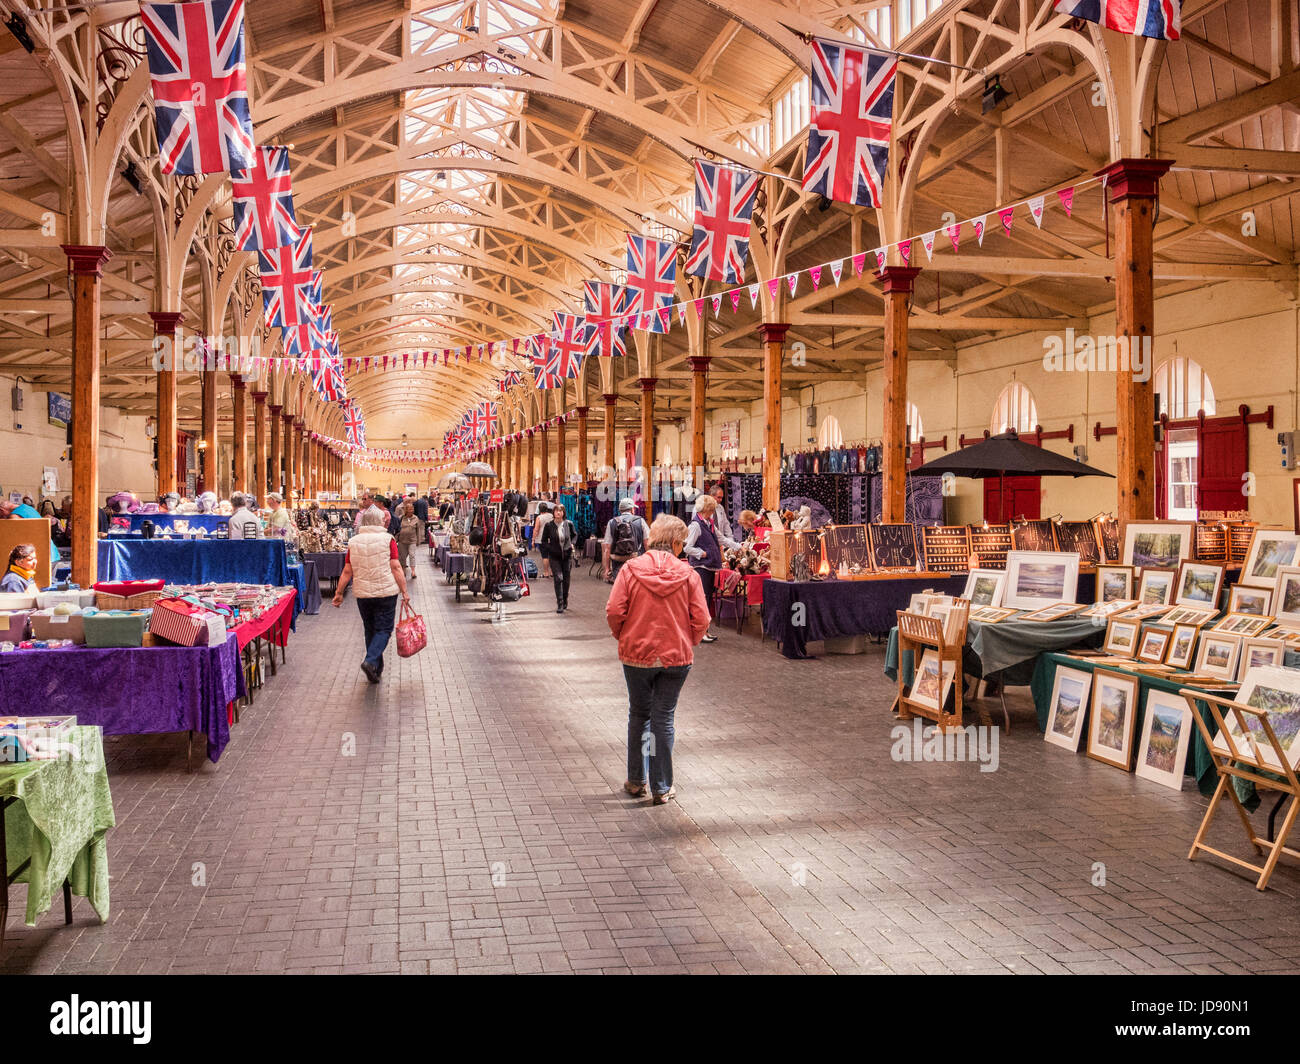 15 Juin 2017 : Barnstaple, England, UK - Le marché de pannier à Barnstaple, North Devon. Ceci a été construit comme un marché aux légumes en 1855-6, et est maintenant utilisé Banque D'Images